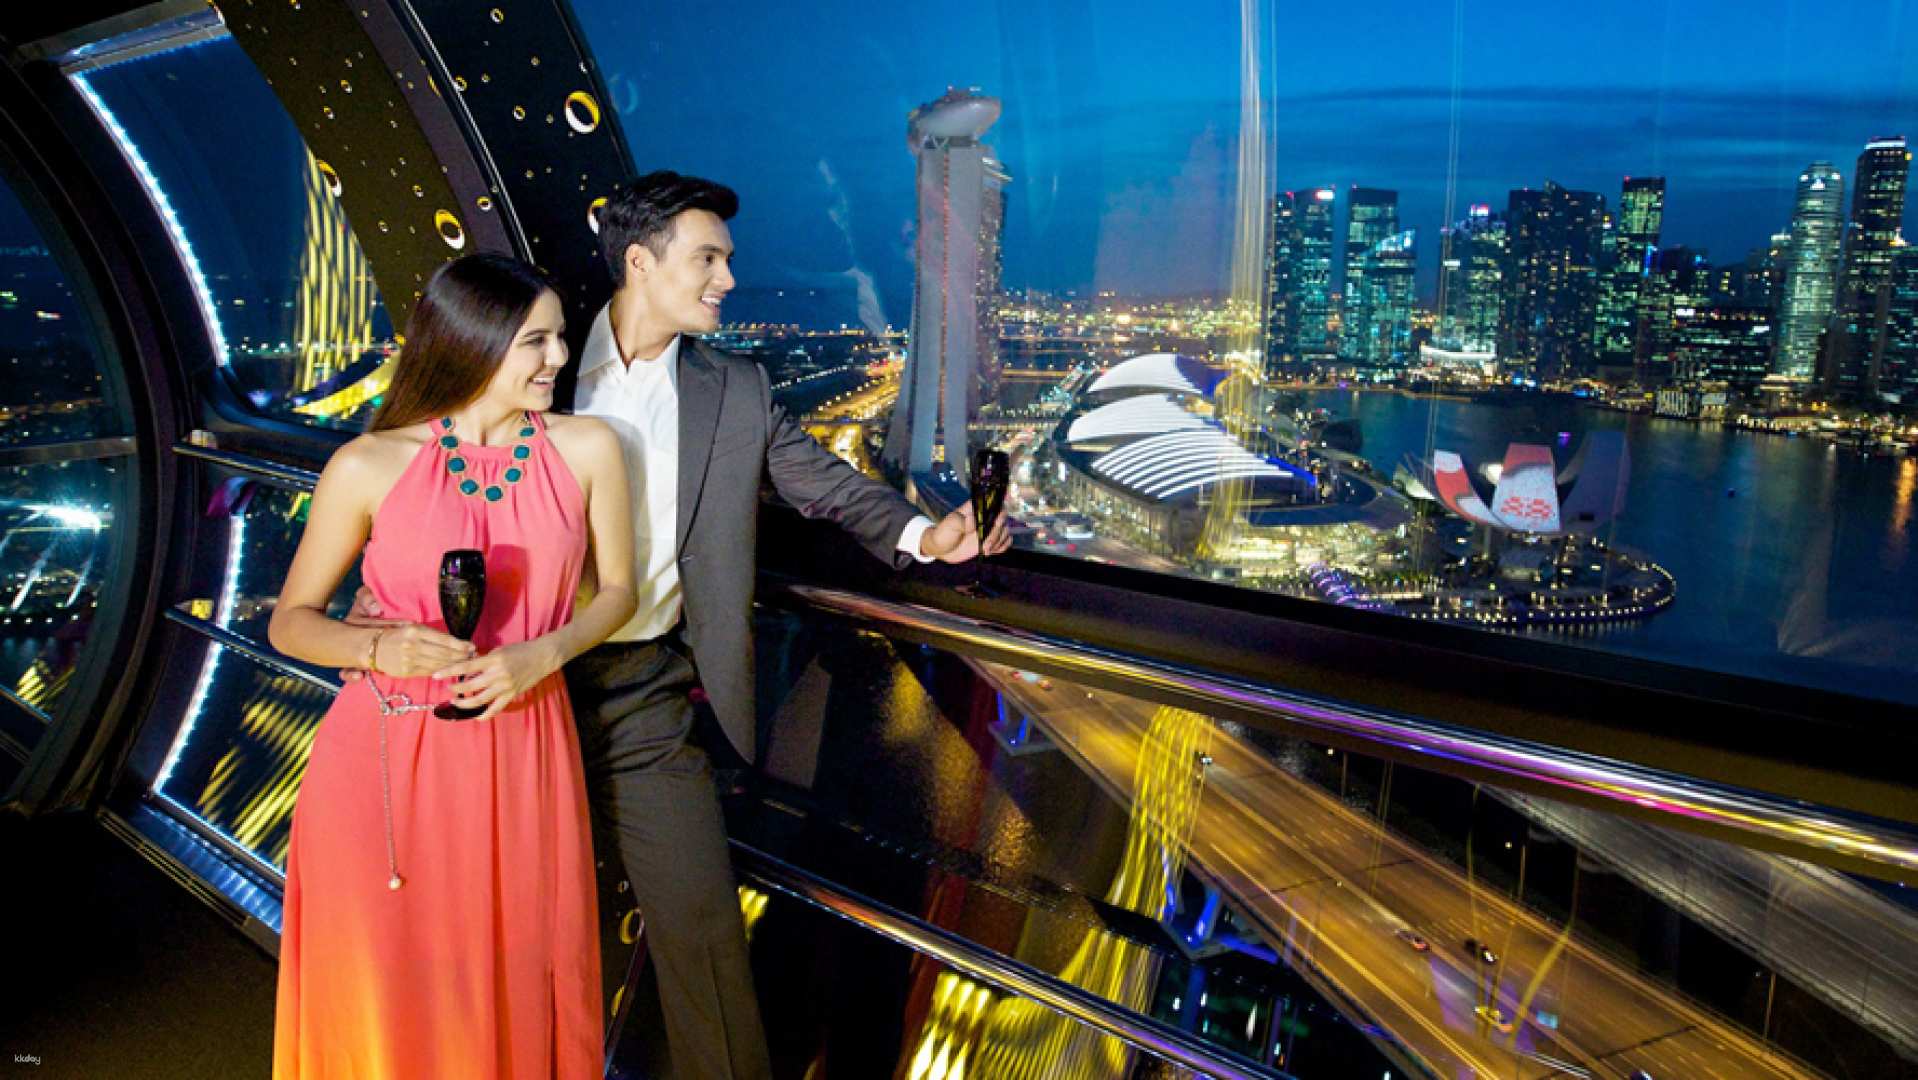 新加坡-景觀摩天輪&時間膠囊| 可選空中用餐體驗or空中飲品